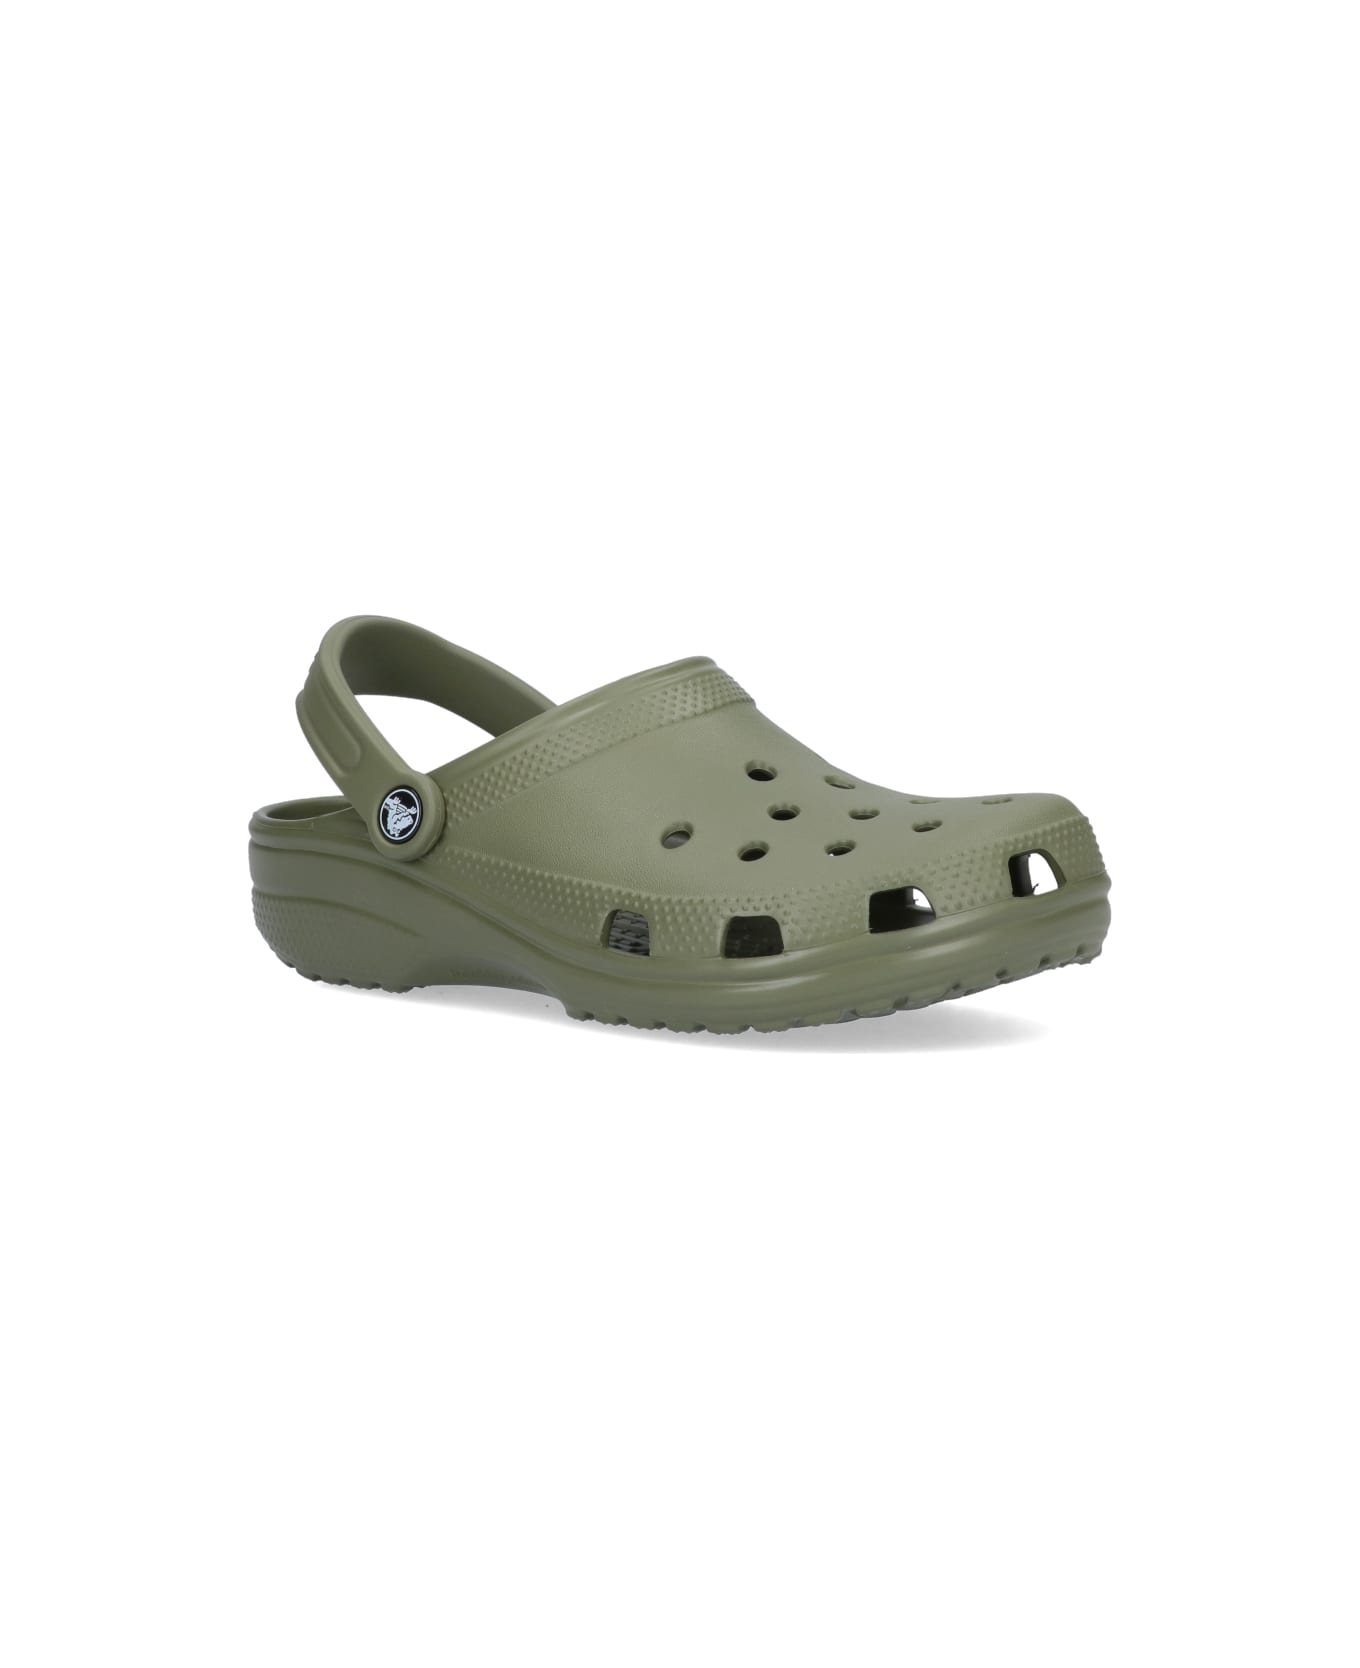 Crocs Flat Shoes - Green